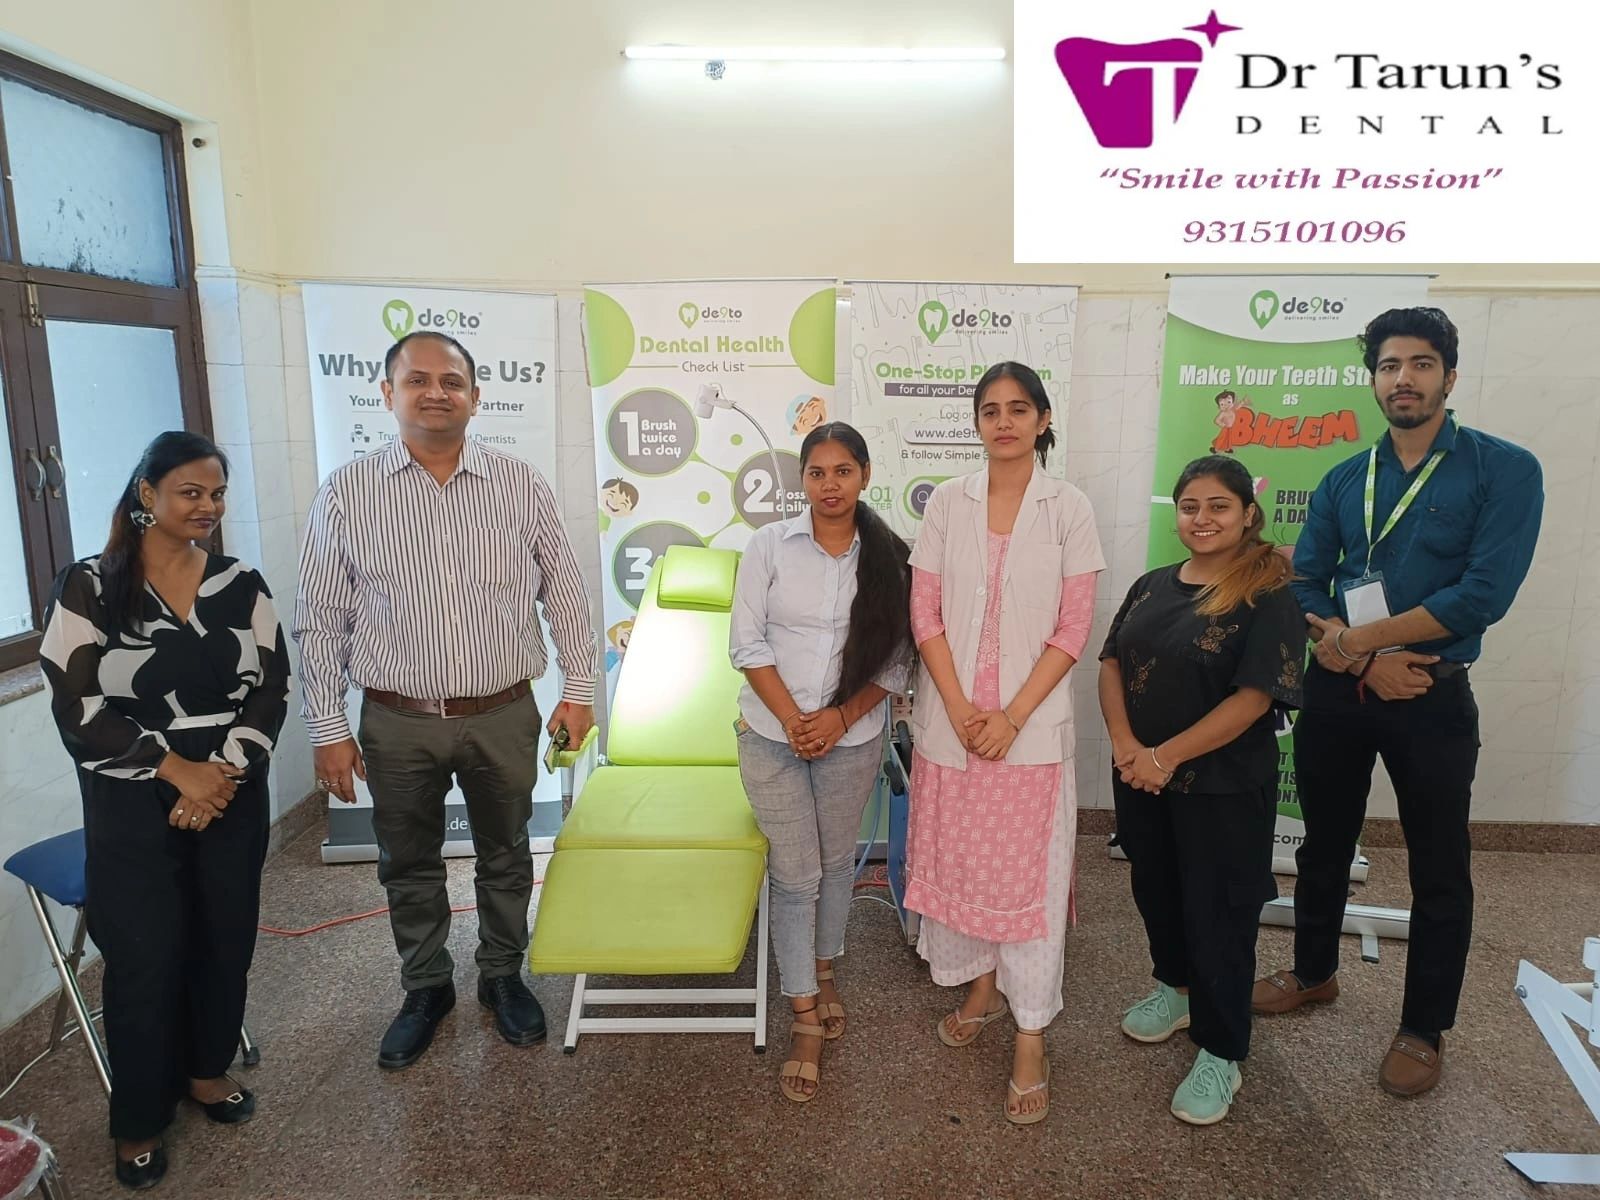 Dr Tarun's Dental & Team